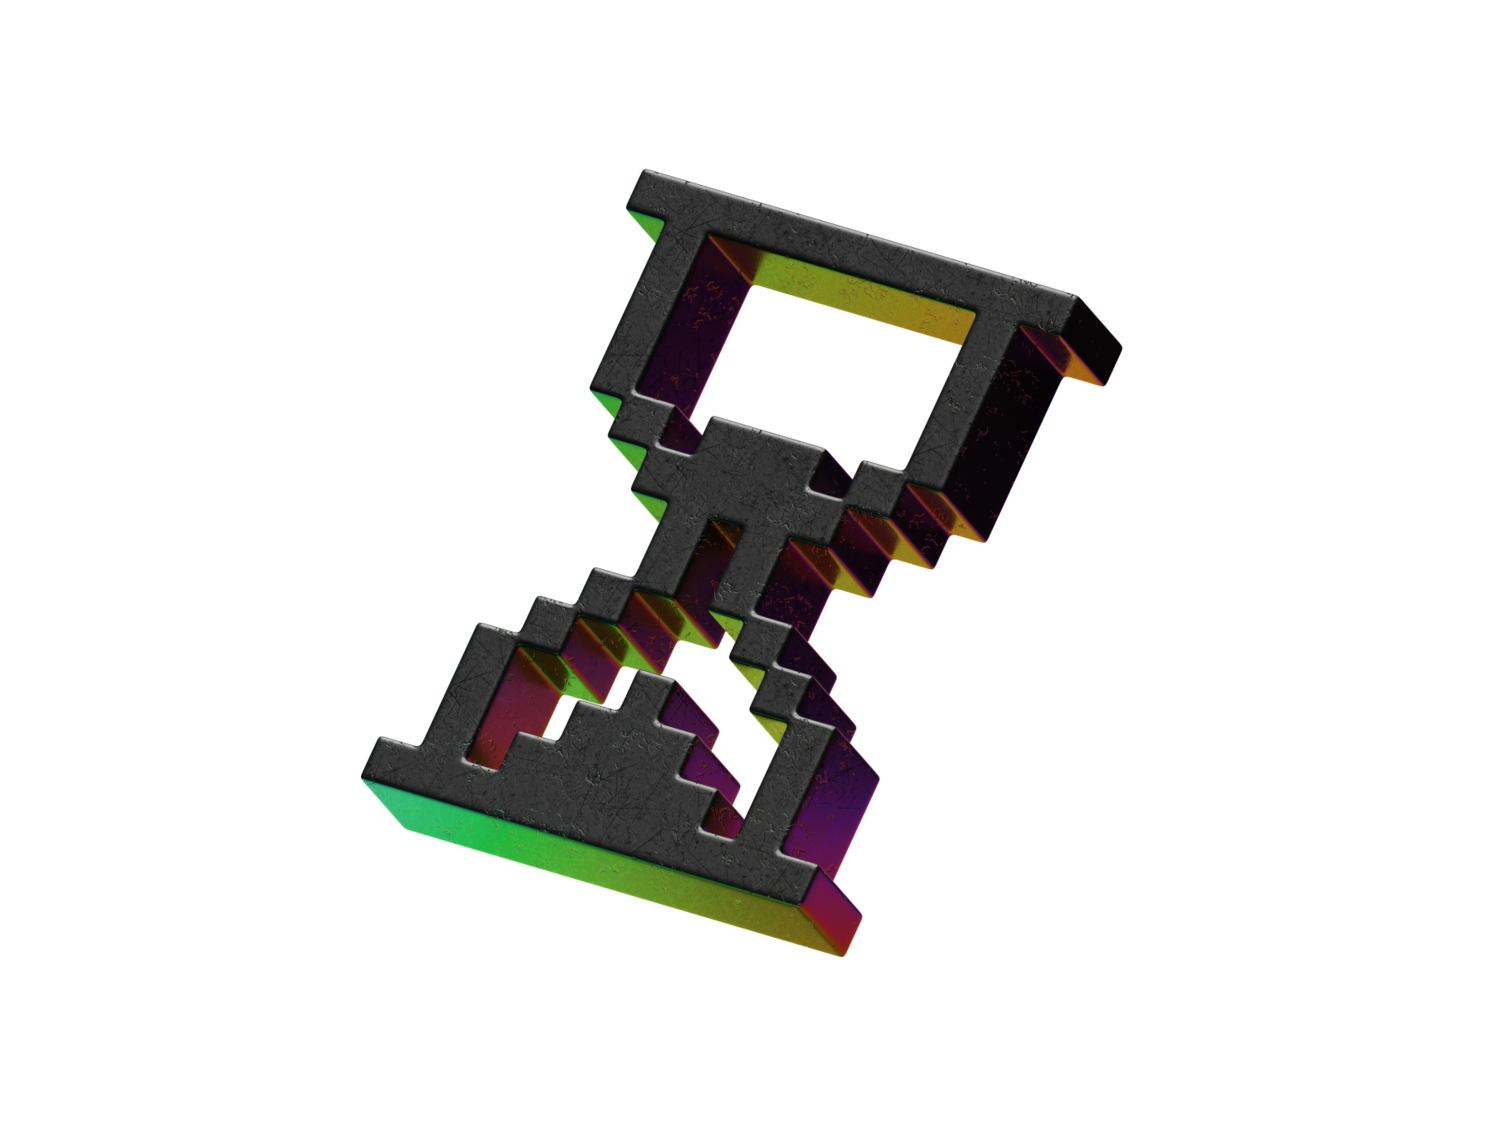 4377 重金属风Y2K主题抽象图形元素3D Blender模型素材包 3D Y2K Icons@GOOODME.COM